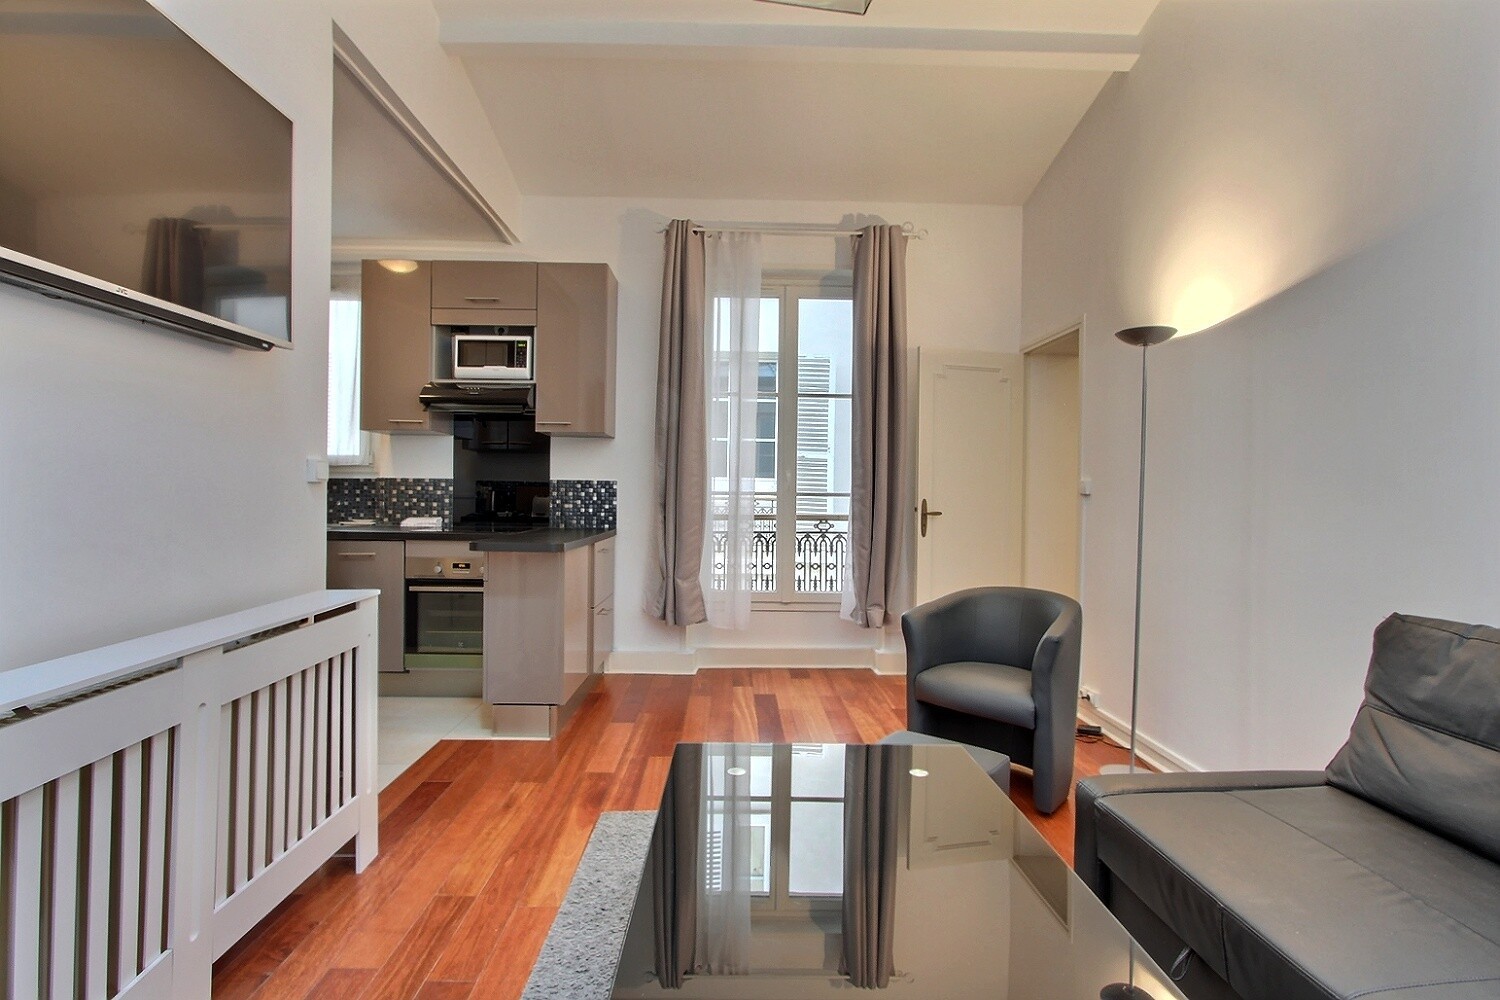 1 bedroom apartment rental in Paris, Rue de l'Avre